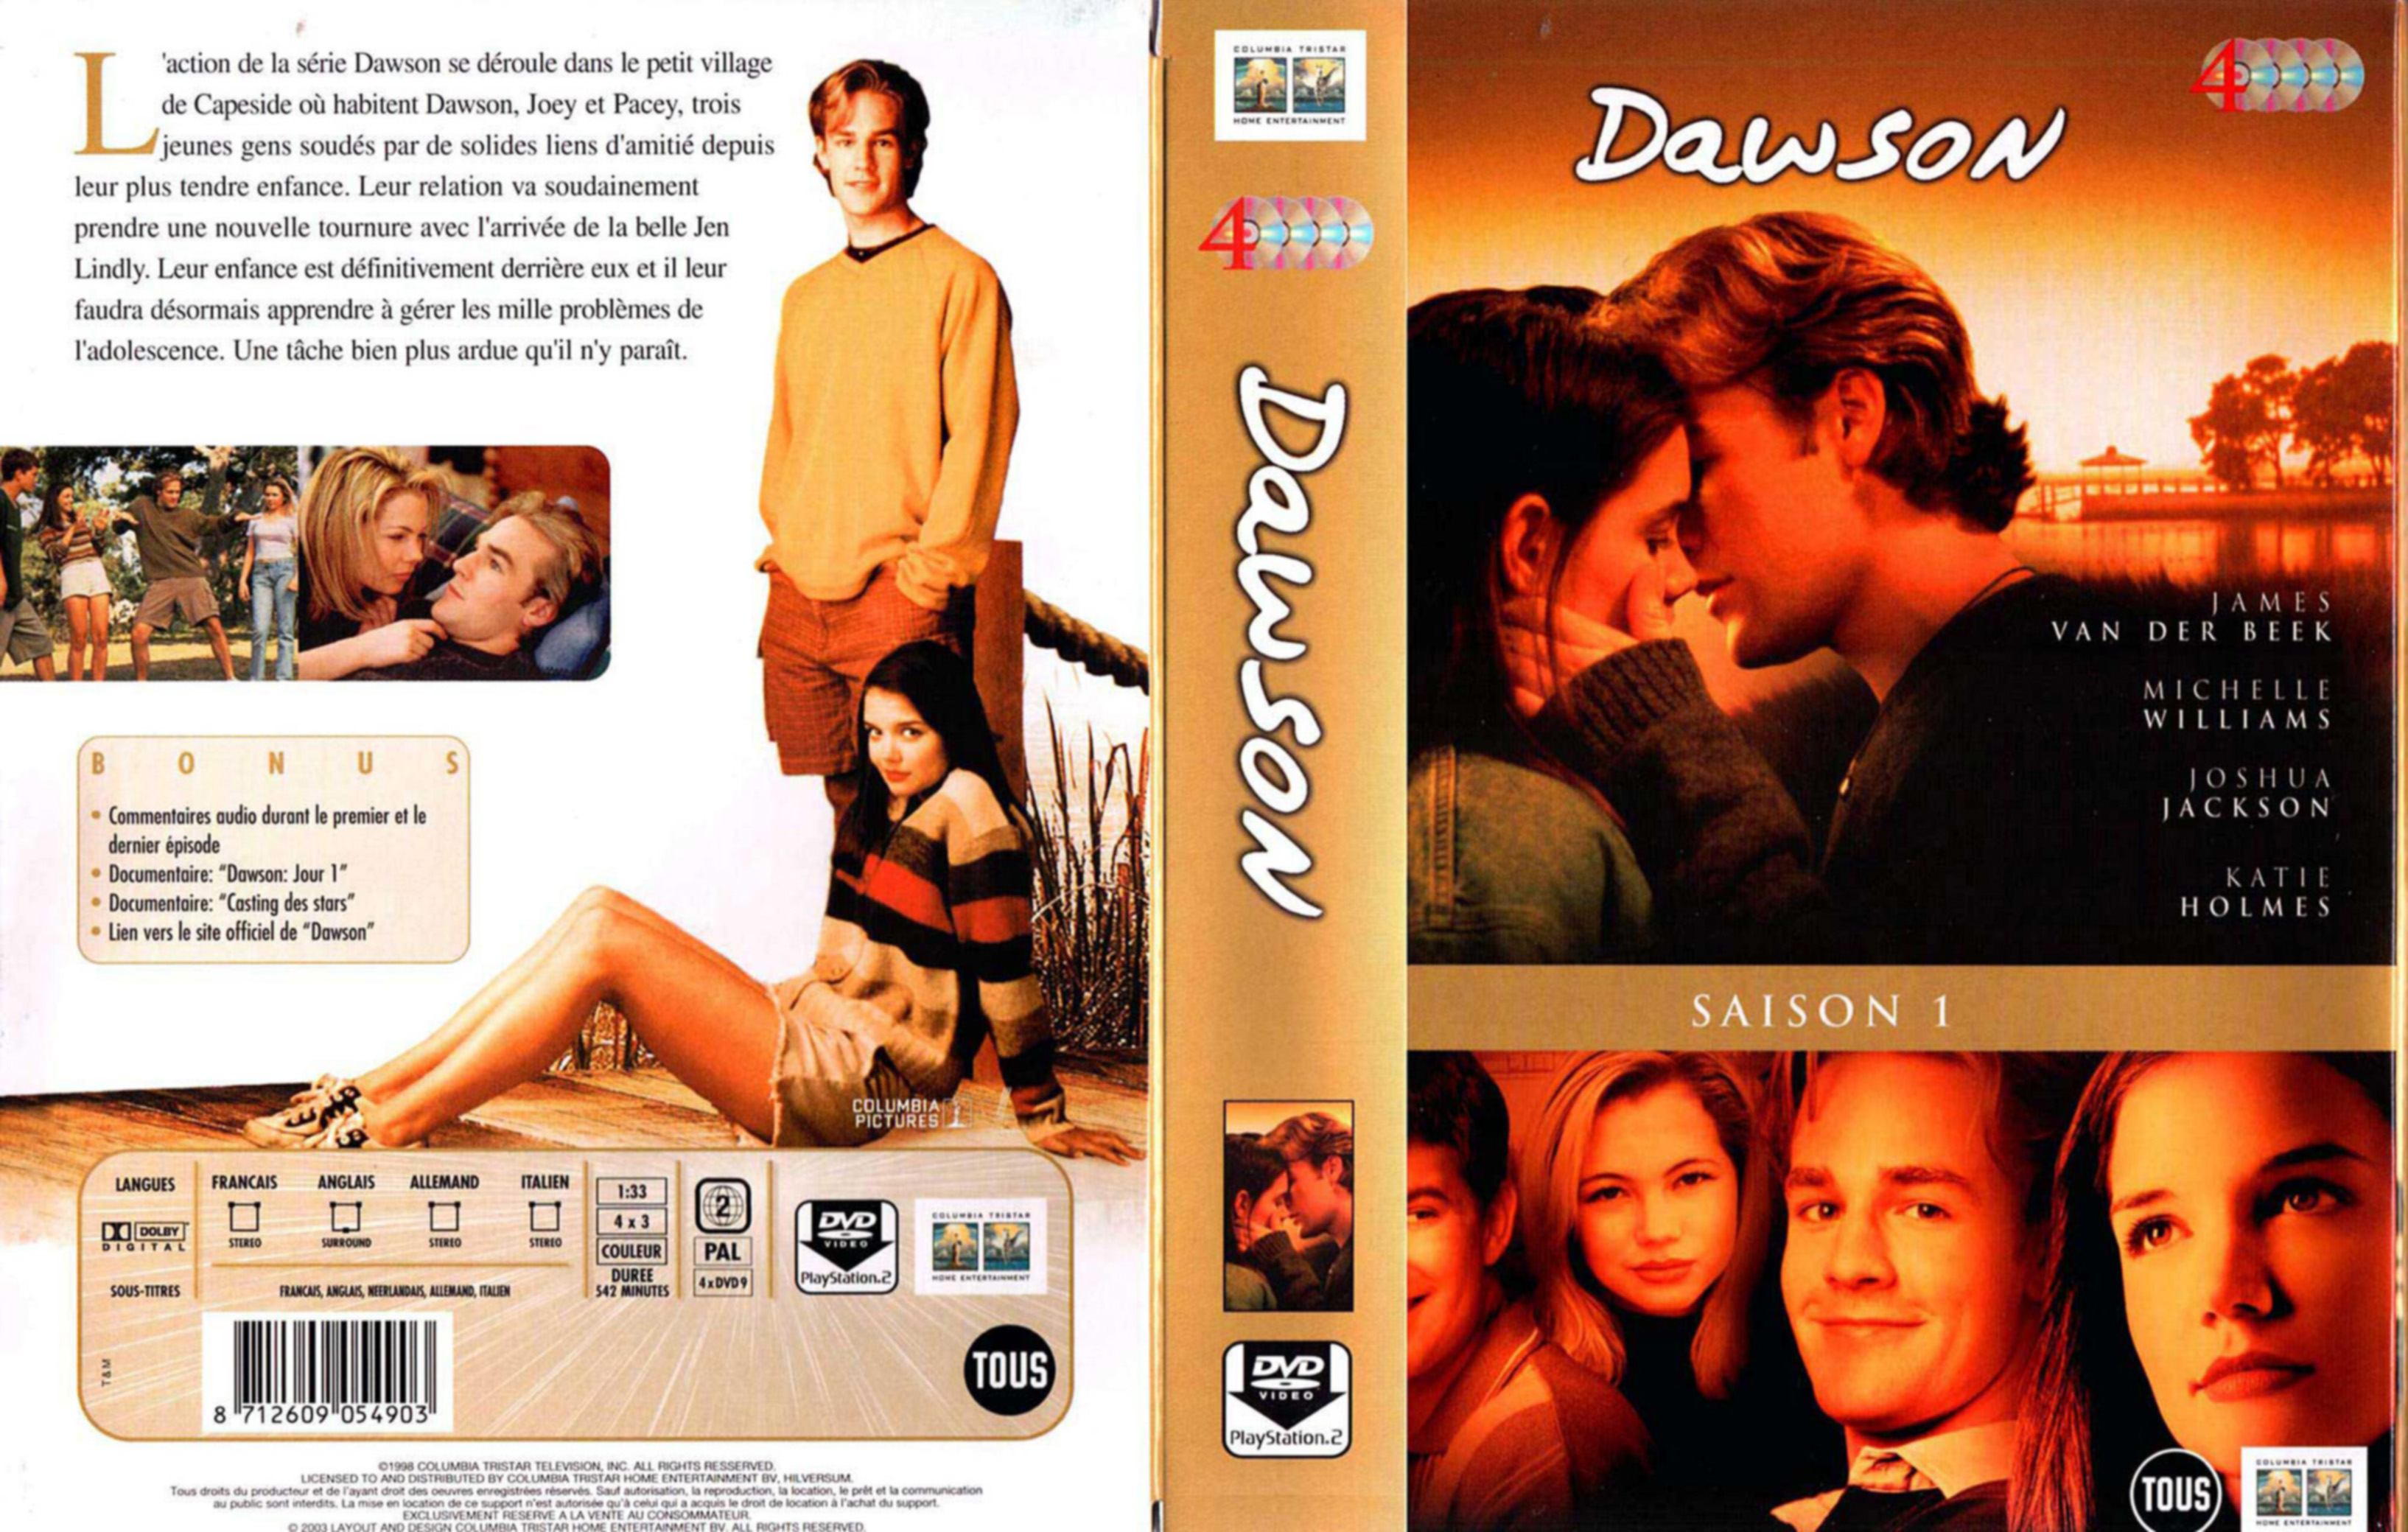 Jaquette DVD Dawson Saison 1 COFFRET